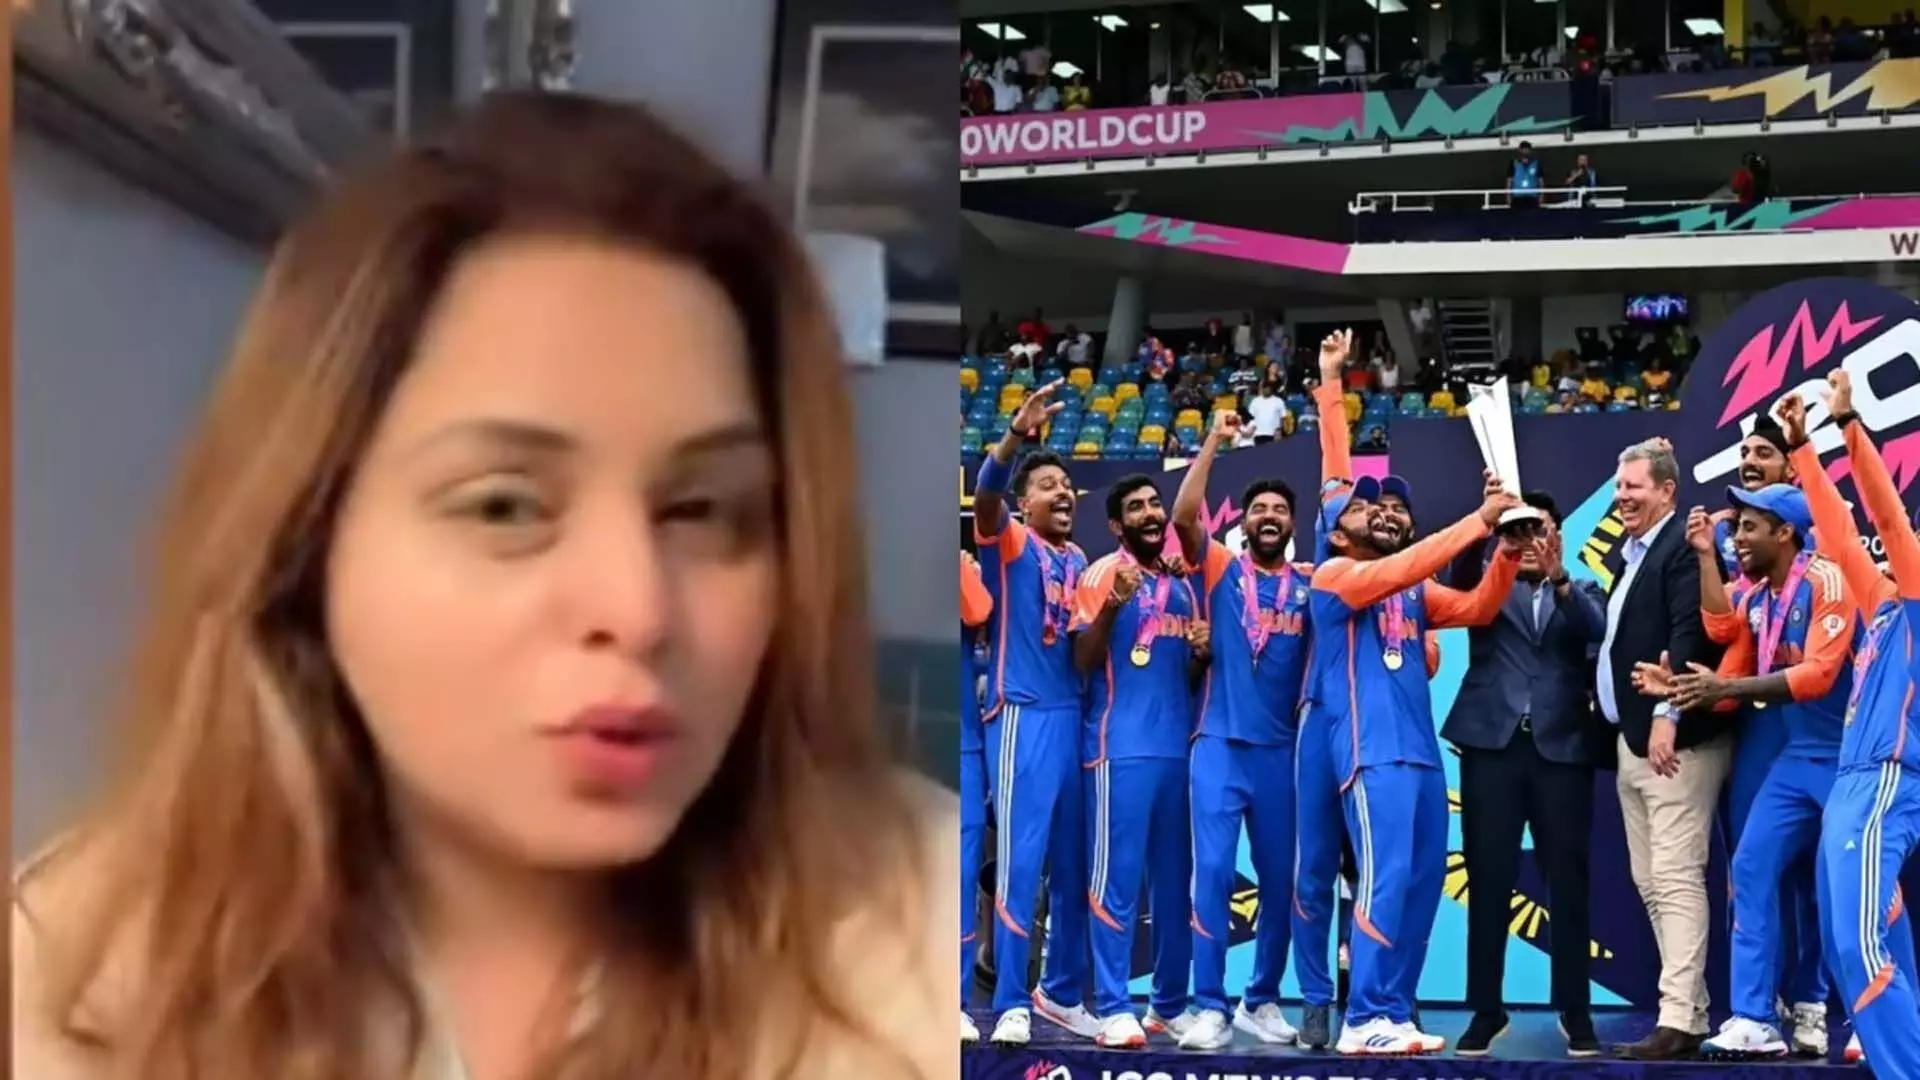 Pakistani फैन ने जीत के बाद ICC पर टीम इंडिया का पक्ष लेने का आरोप लगाया, वीडियो